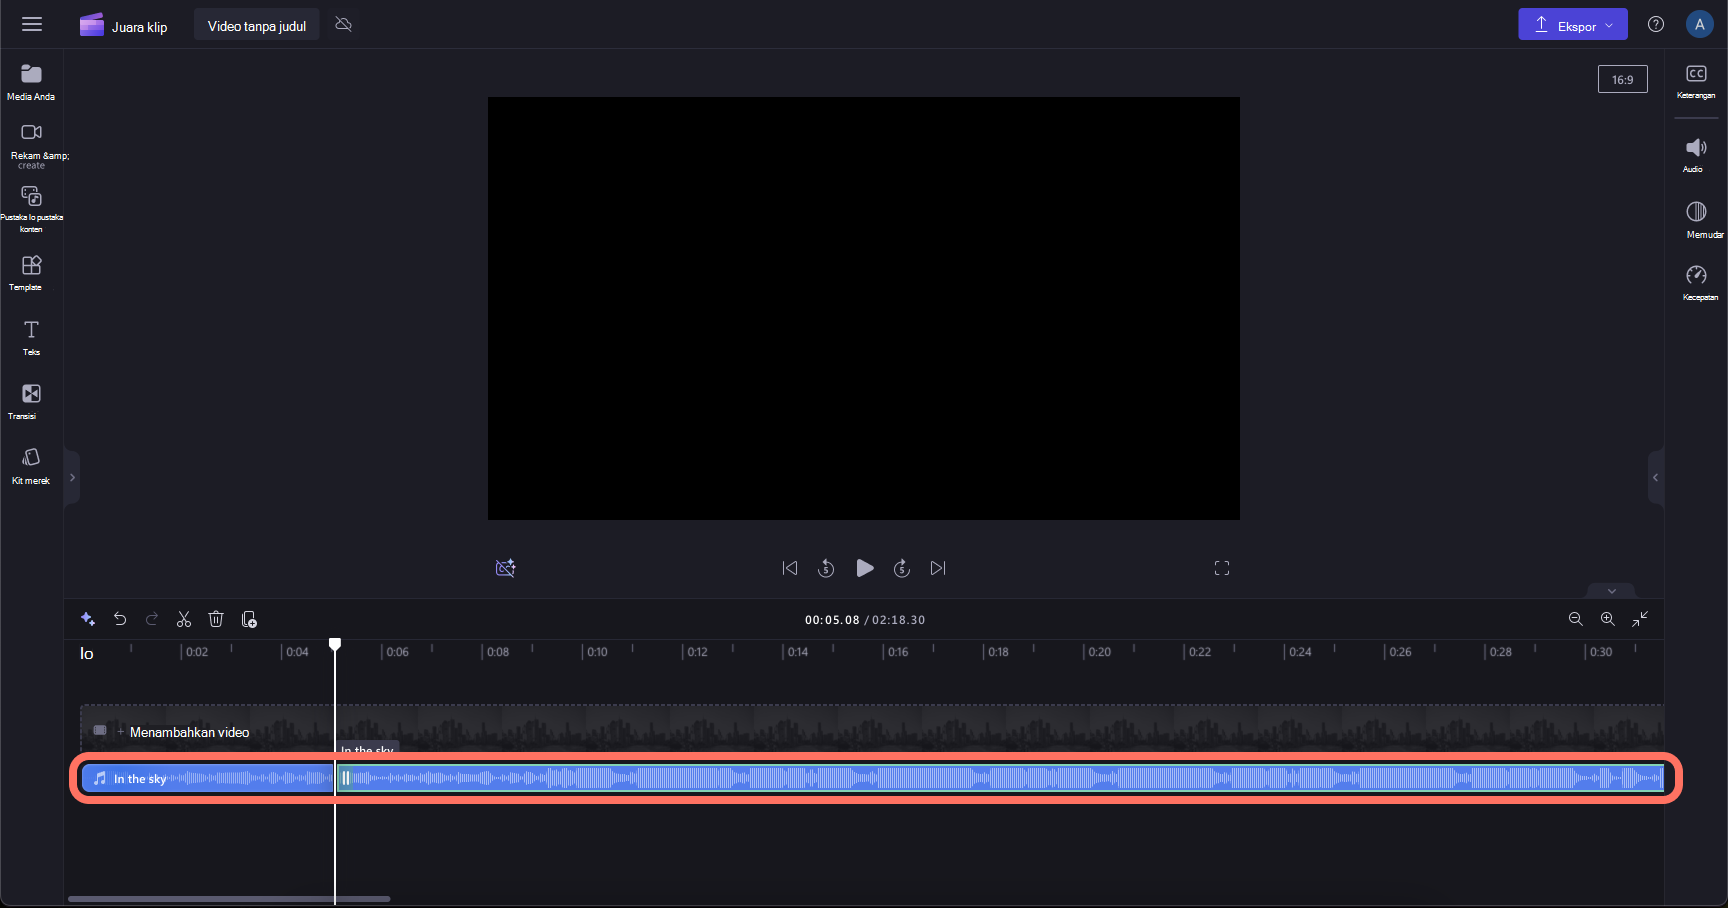 Gambar memperlihatkan klip audio terpisah di garis waktu